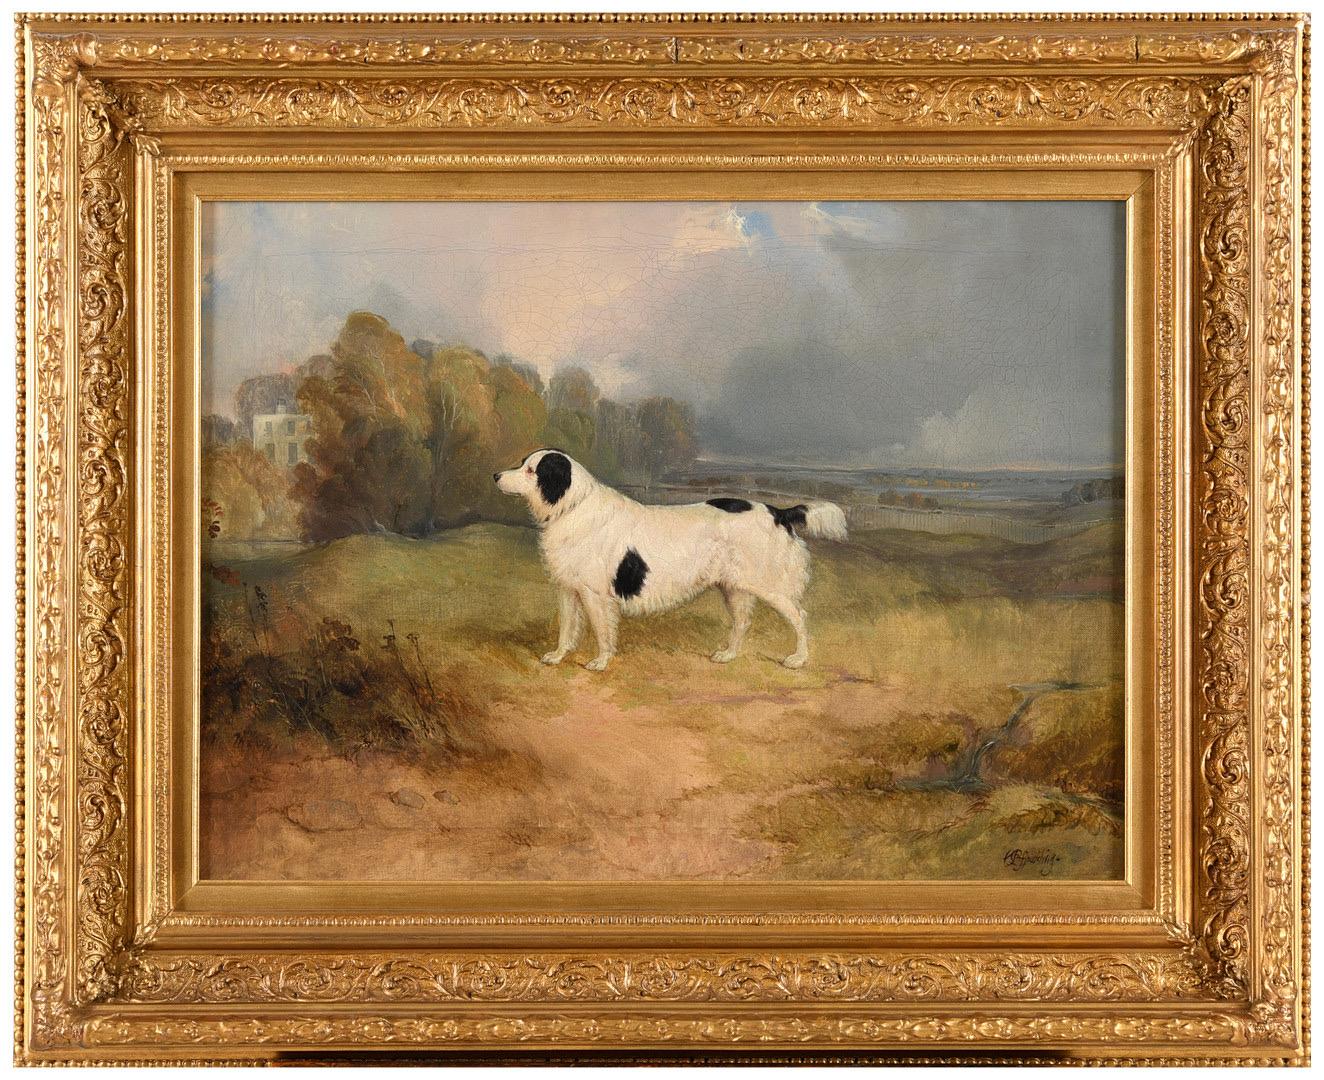 Portrait du 19e siècle d'un chien épagneul dans un paysage, une maison de campagne à l'arrière-plan